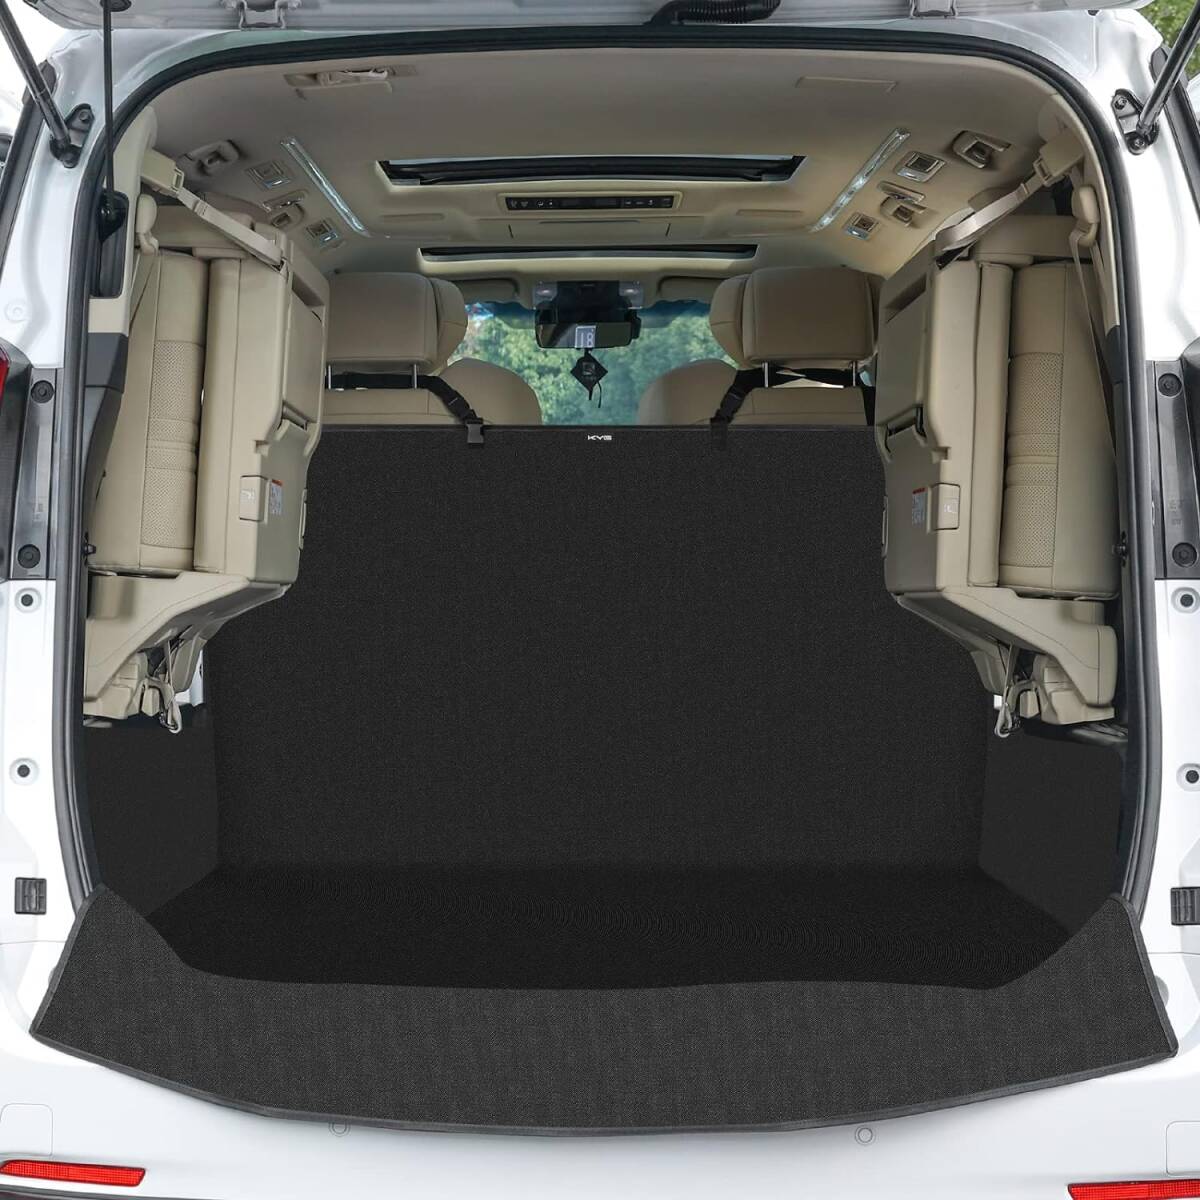 折りたたみ式で取付簡単!! トランクマット ドライブシート 防水 汚れに強い 汎用タイプ ペット アウトドア 高品質 車内を綺麗に保ちます